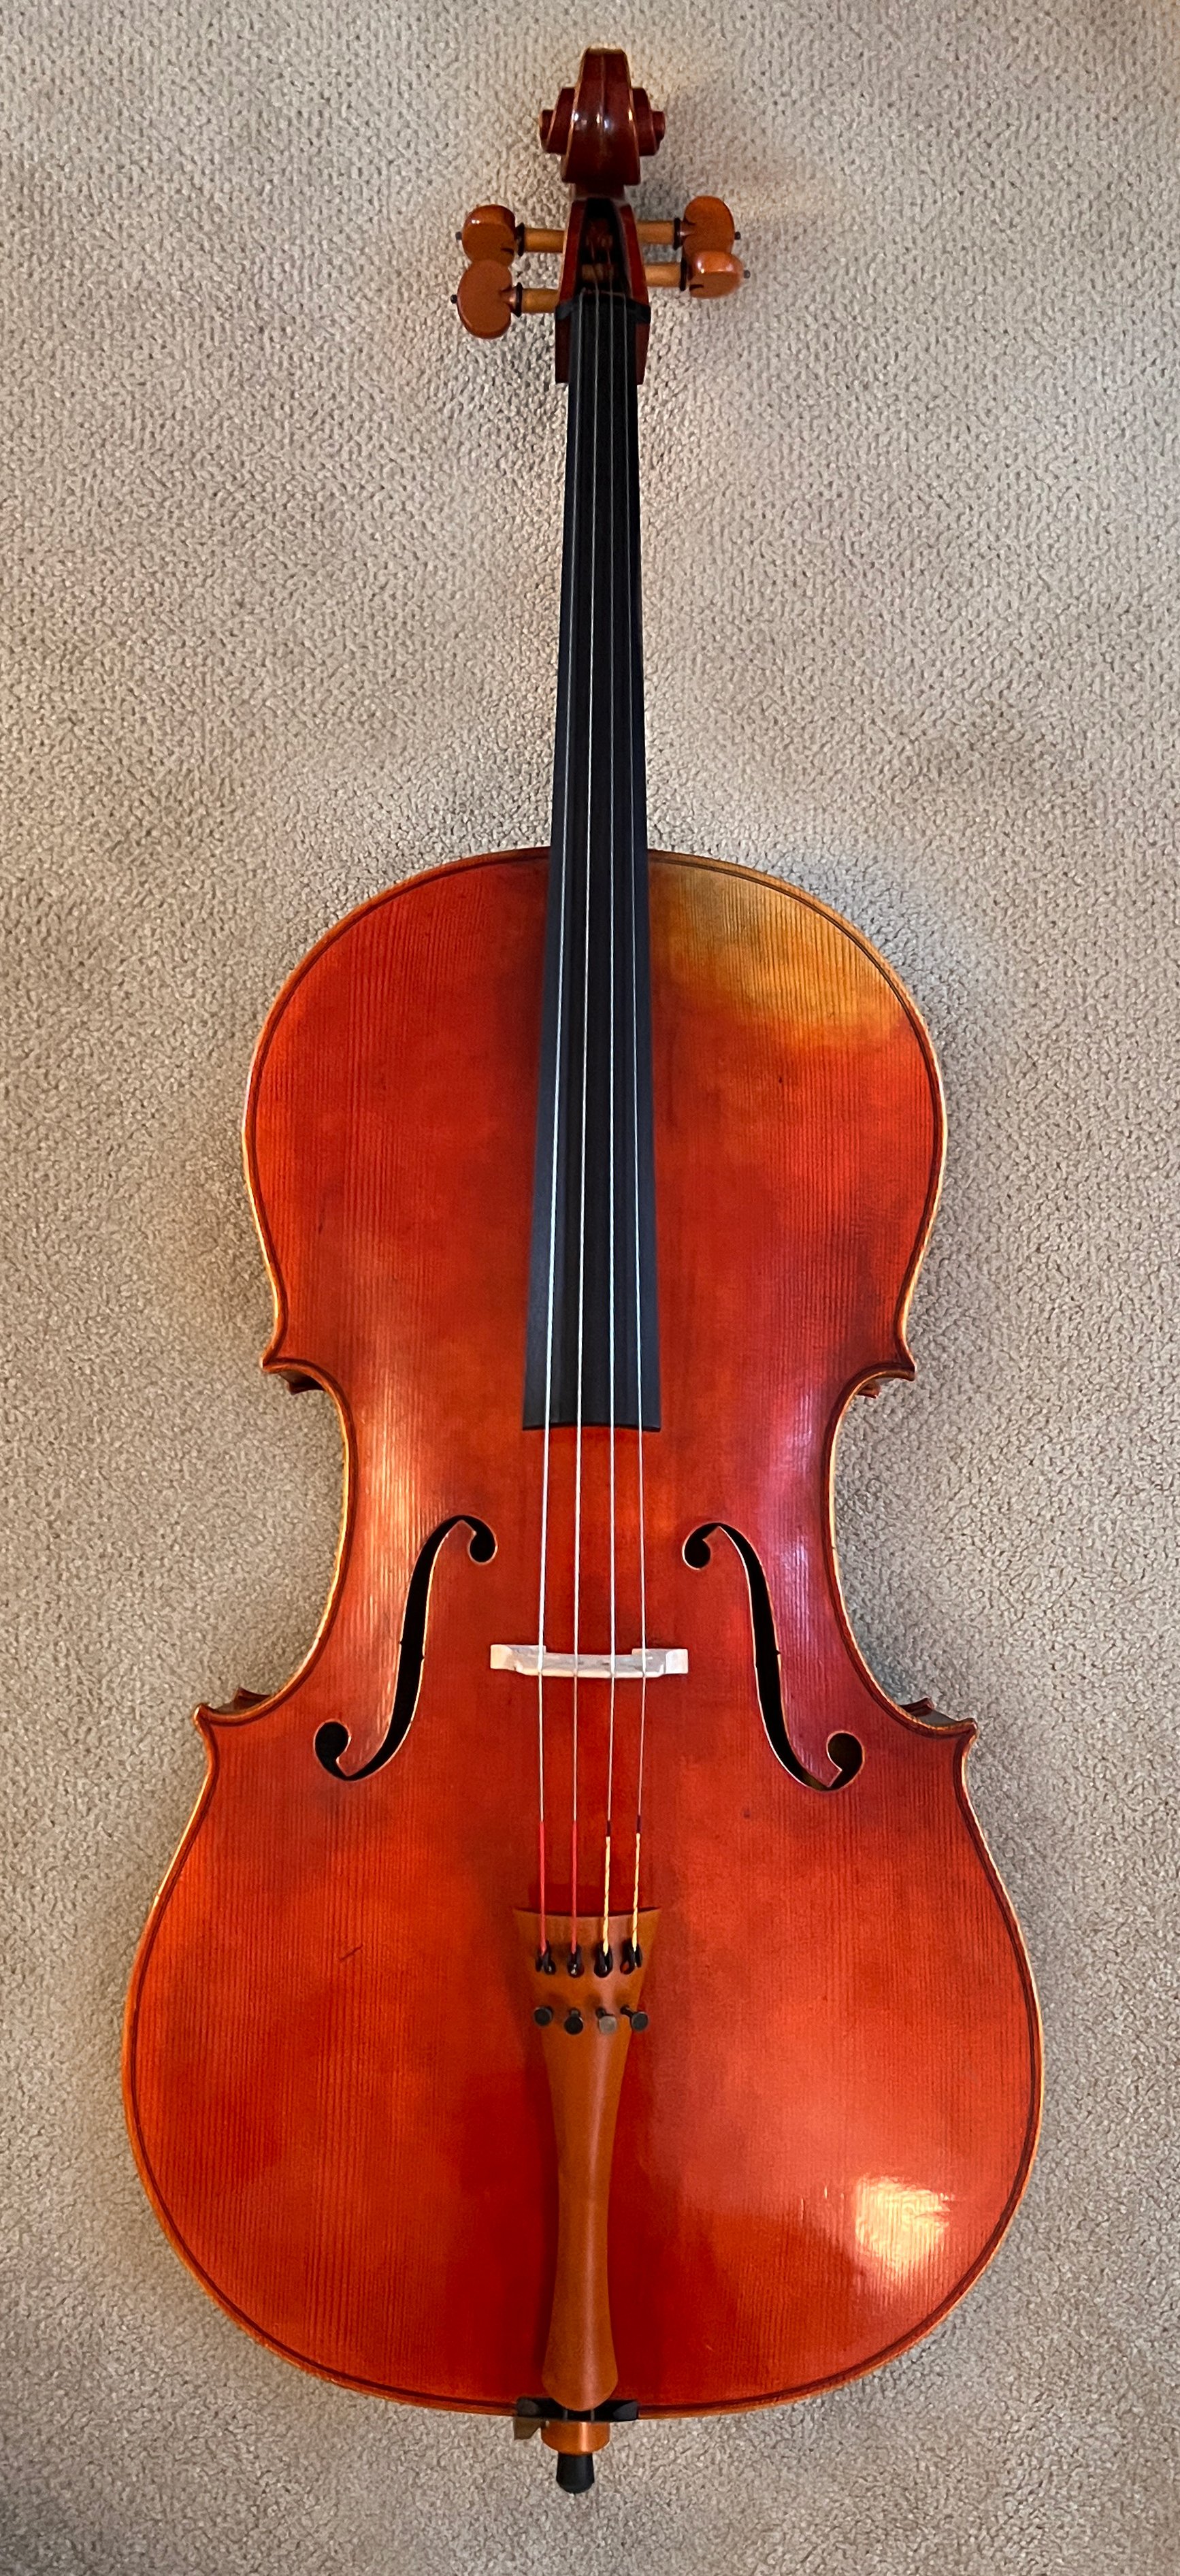 Cello-8-front.jpg